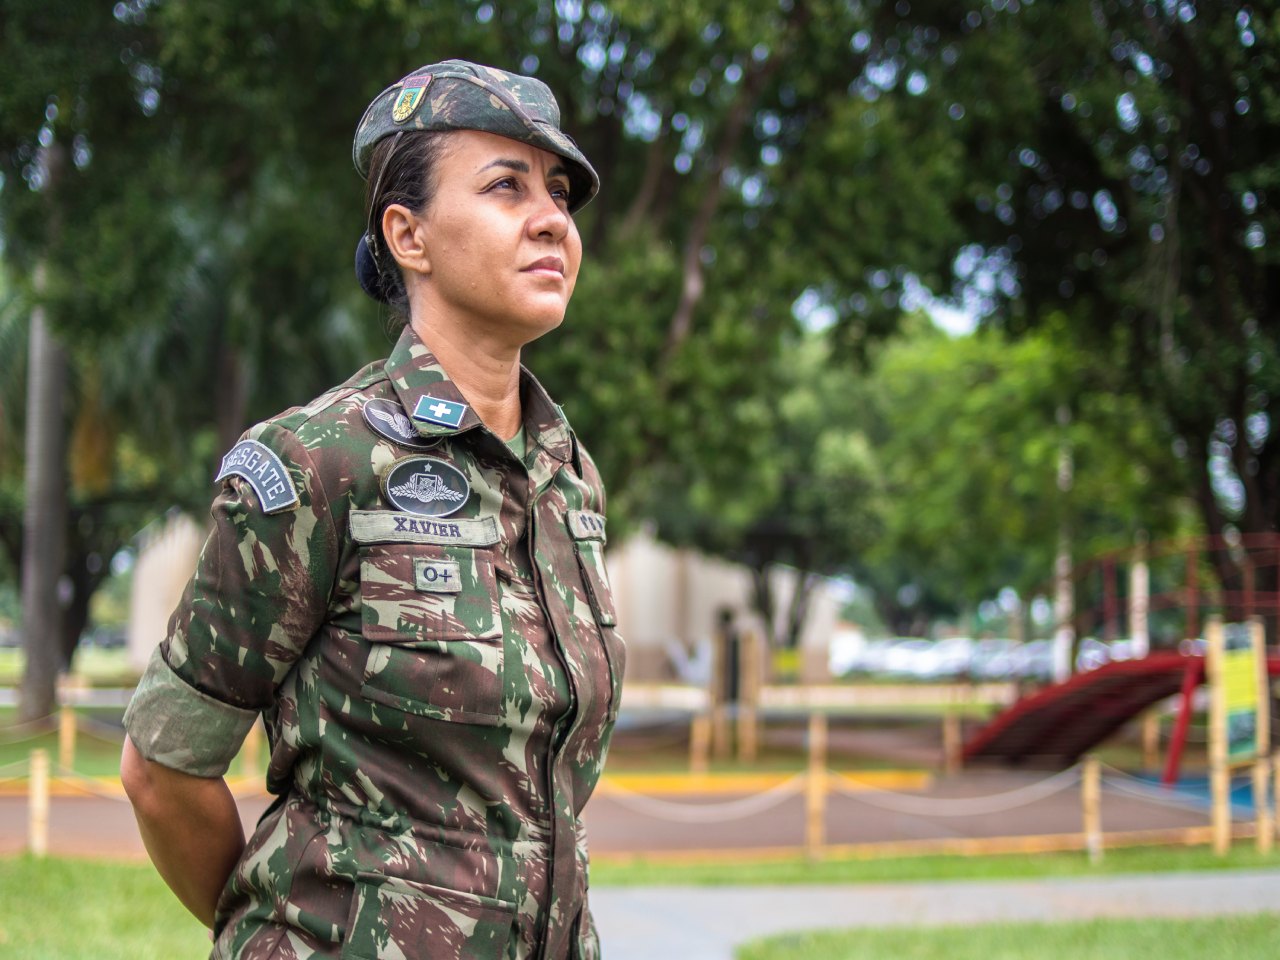 Exército Brasileiro 🇧🇷 on X: Conheça a história da Mulher no